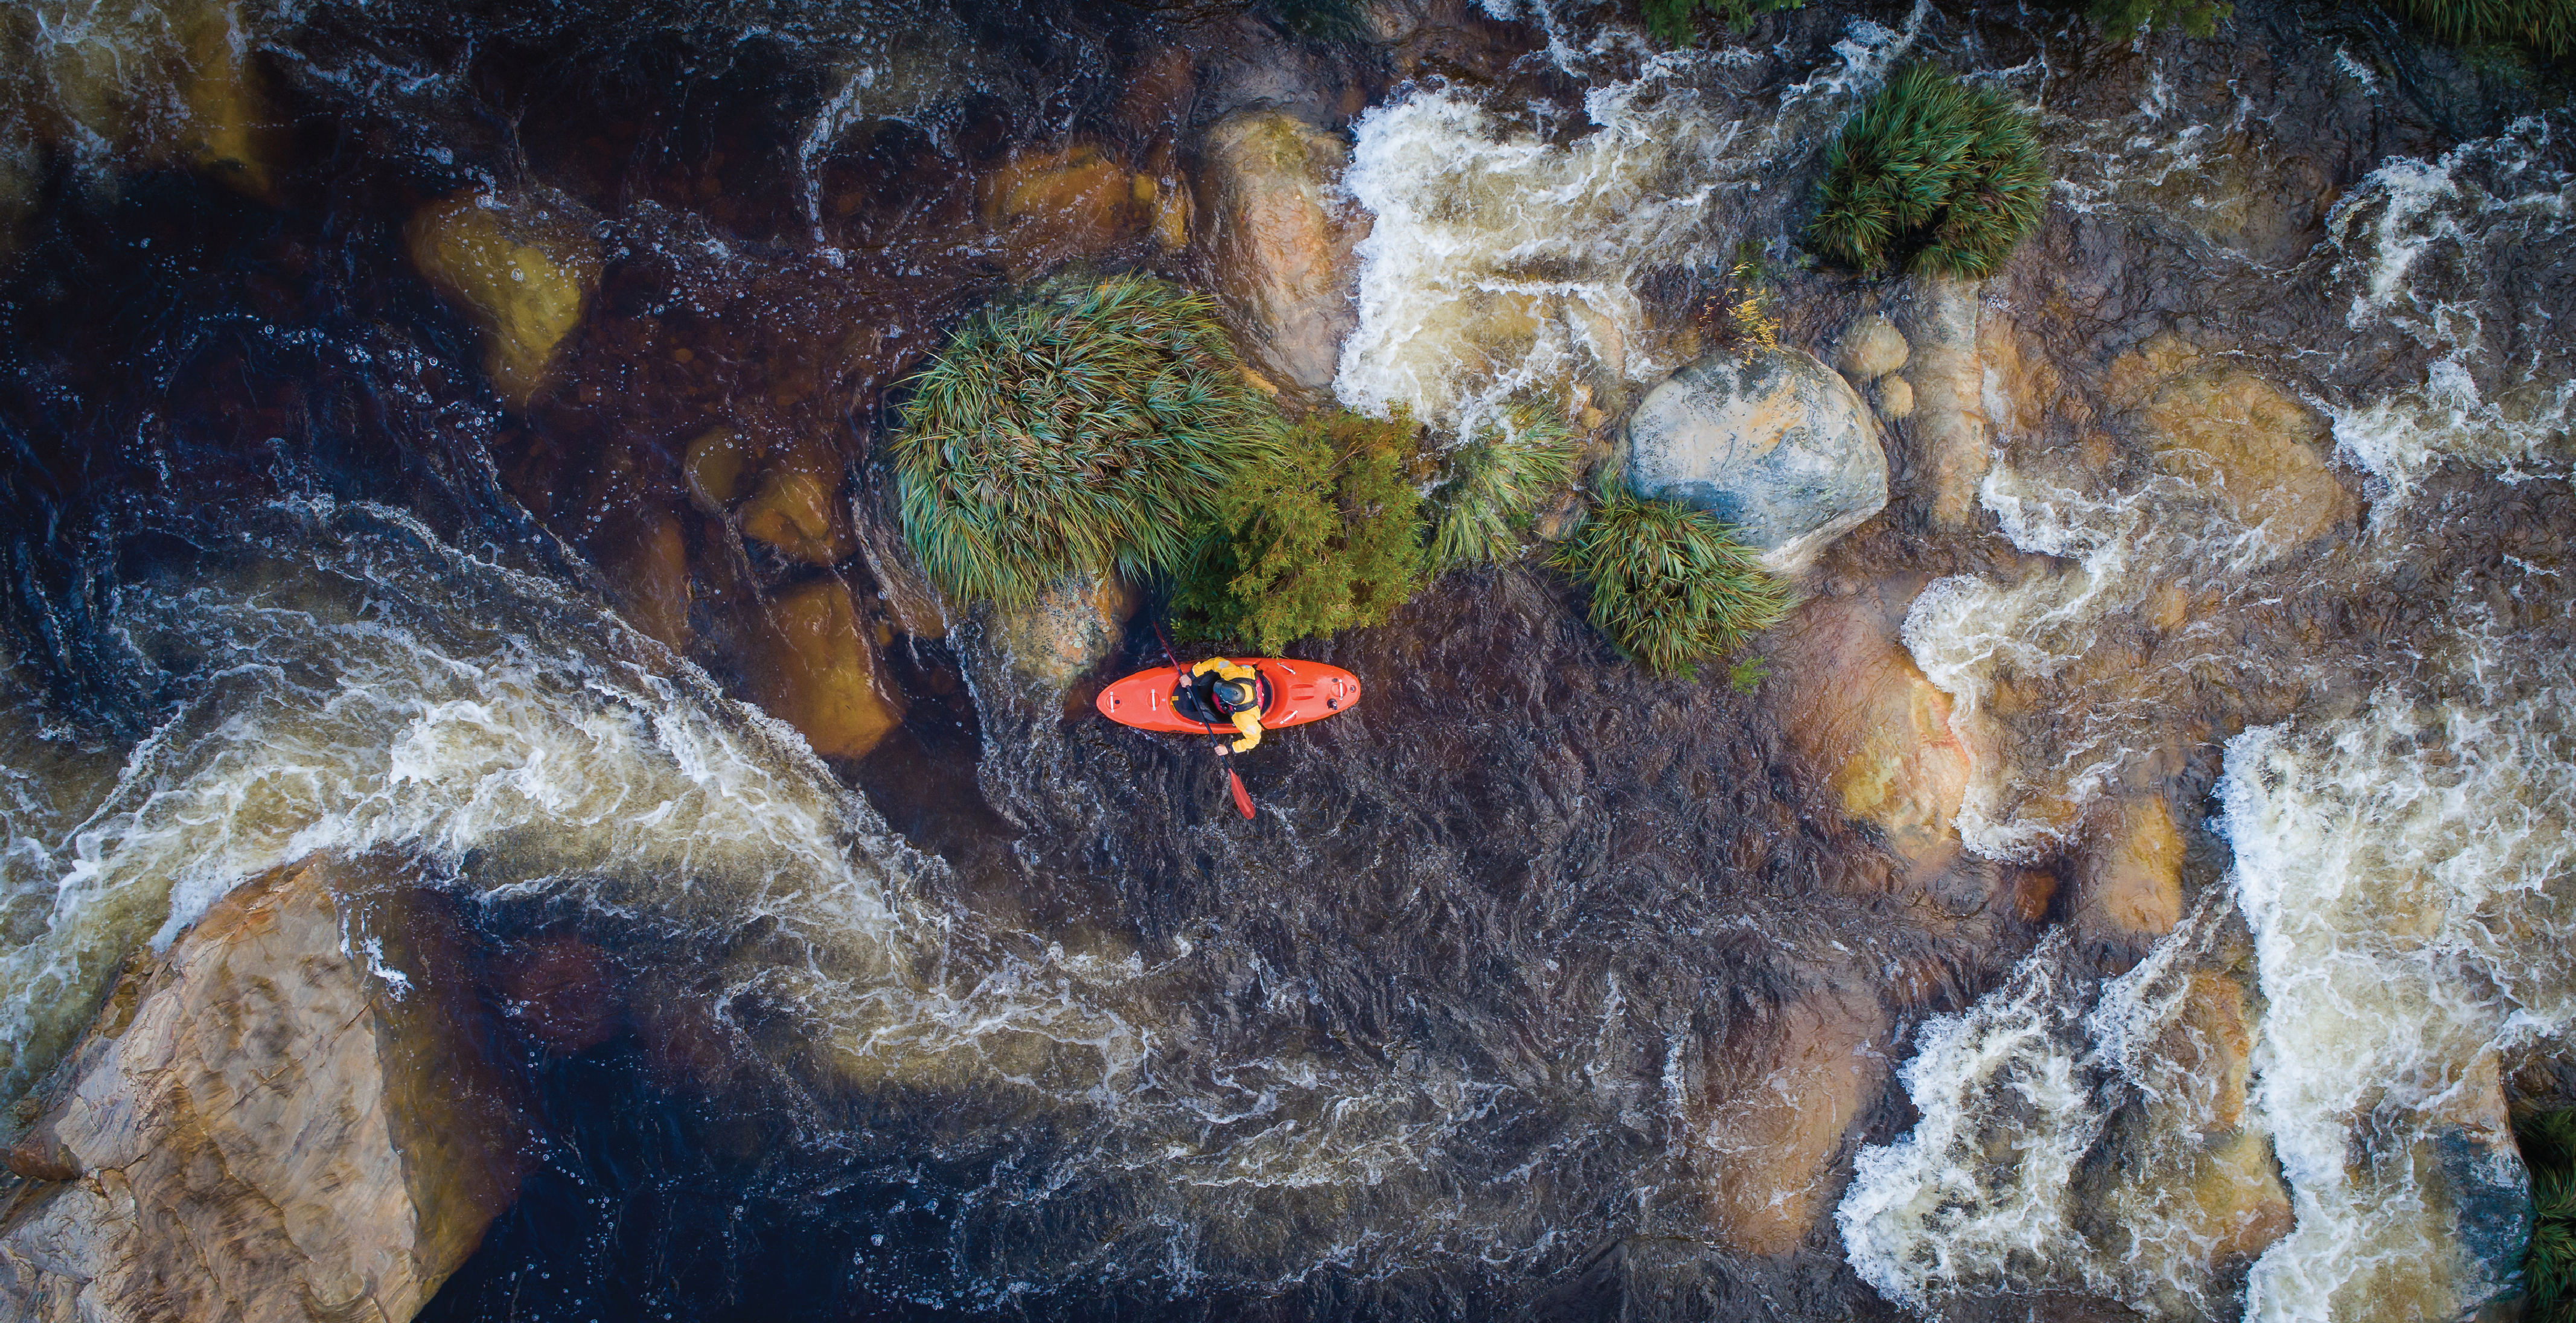 Kayaker in river